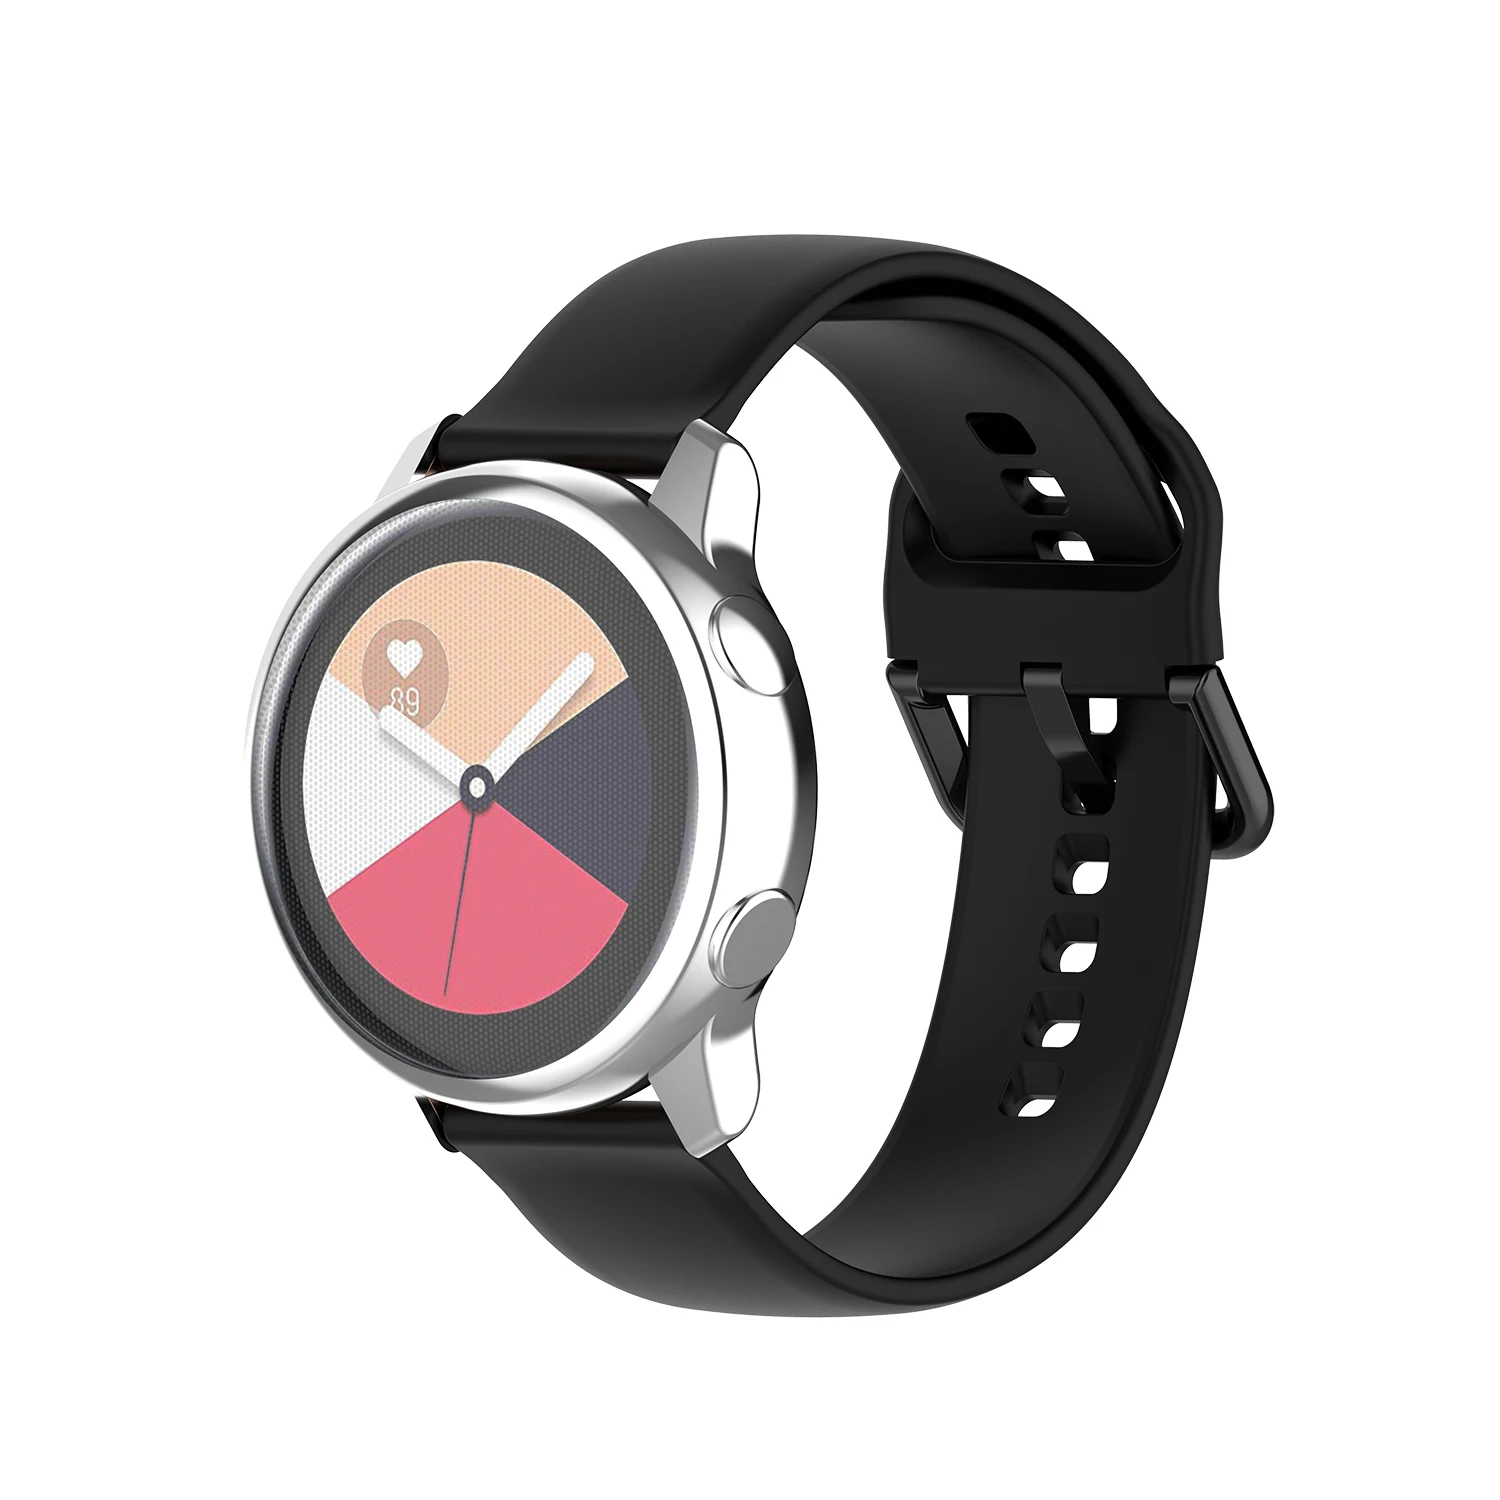 Чехол для часов samsung galaxy Watch active/R500, чехол, покрытие, цветной прозрачный мягкий ТПУ Пластиковый защитный чехол